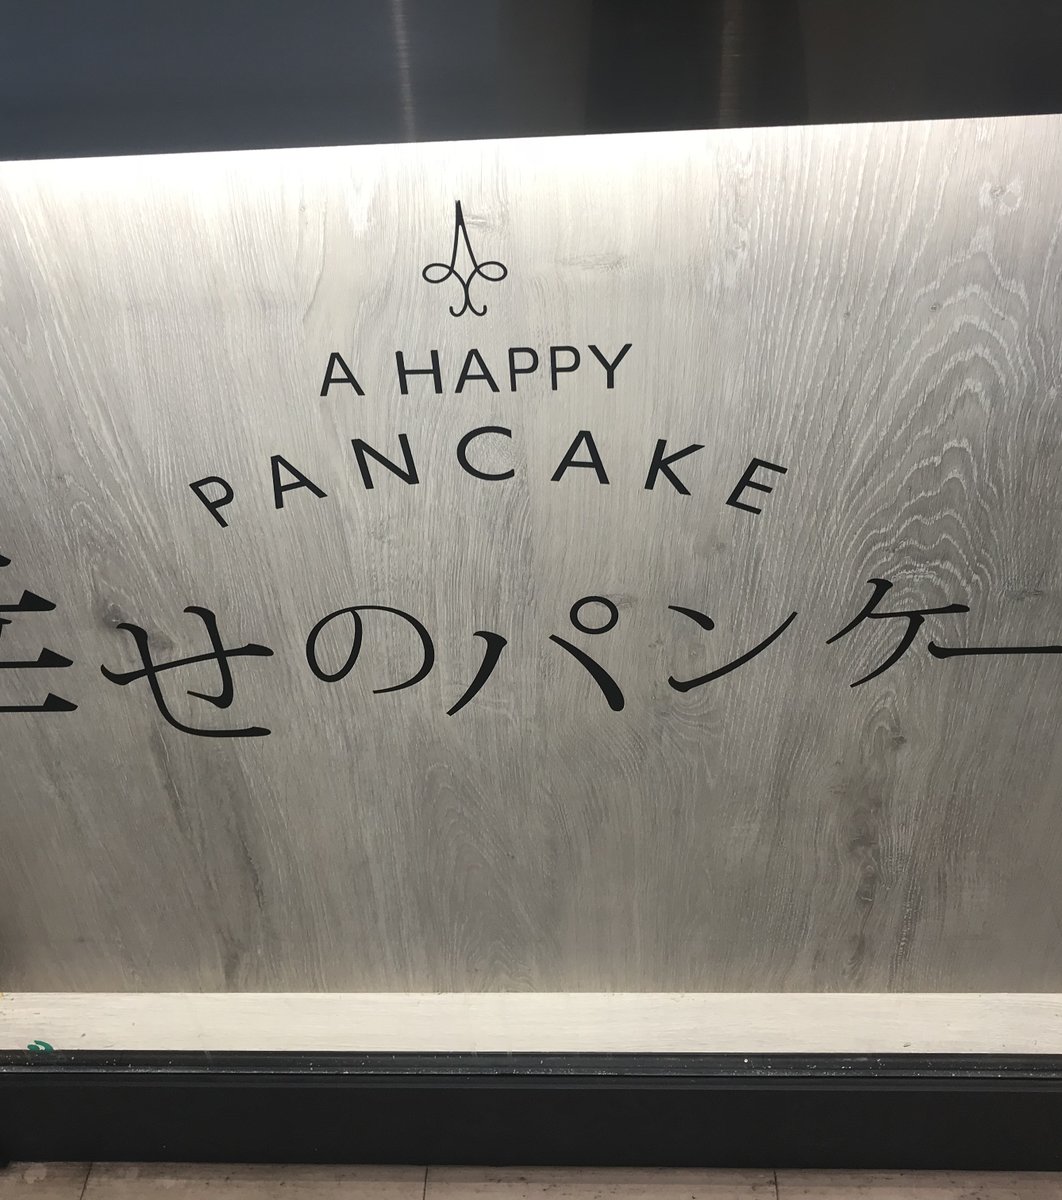 幸せのパンケーキ 船橋店